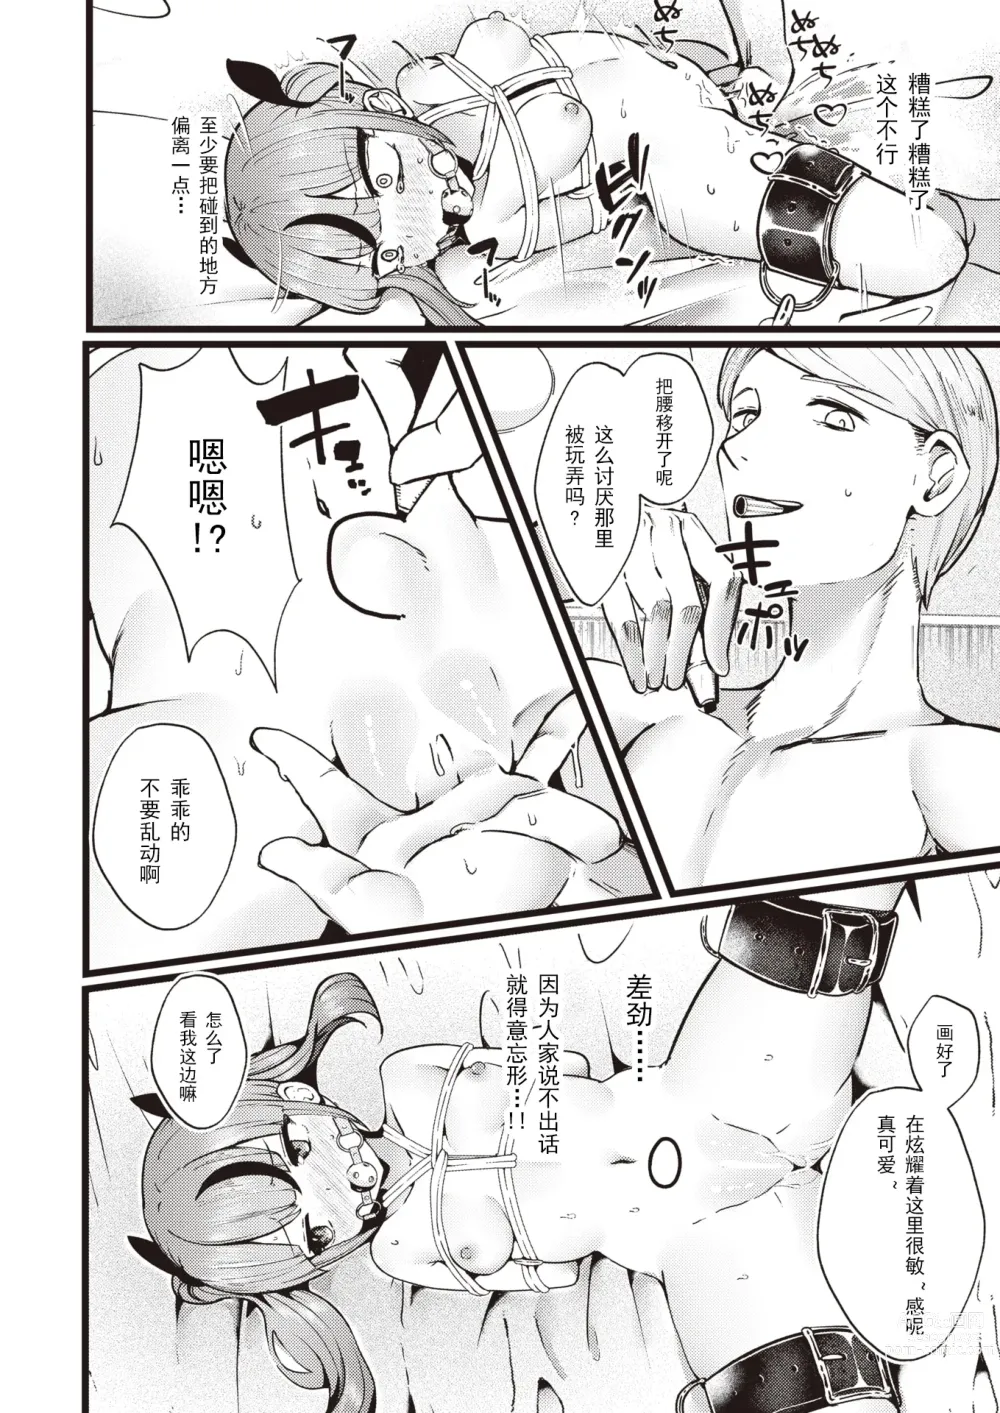 Page 12 of manga 就用身体來支付!